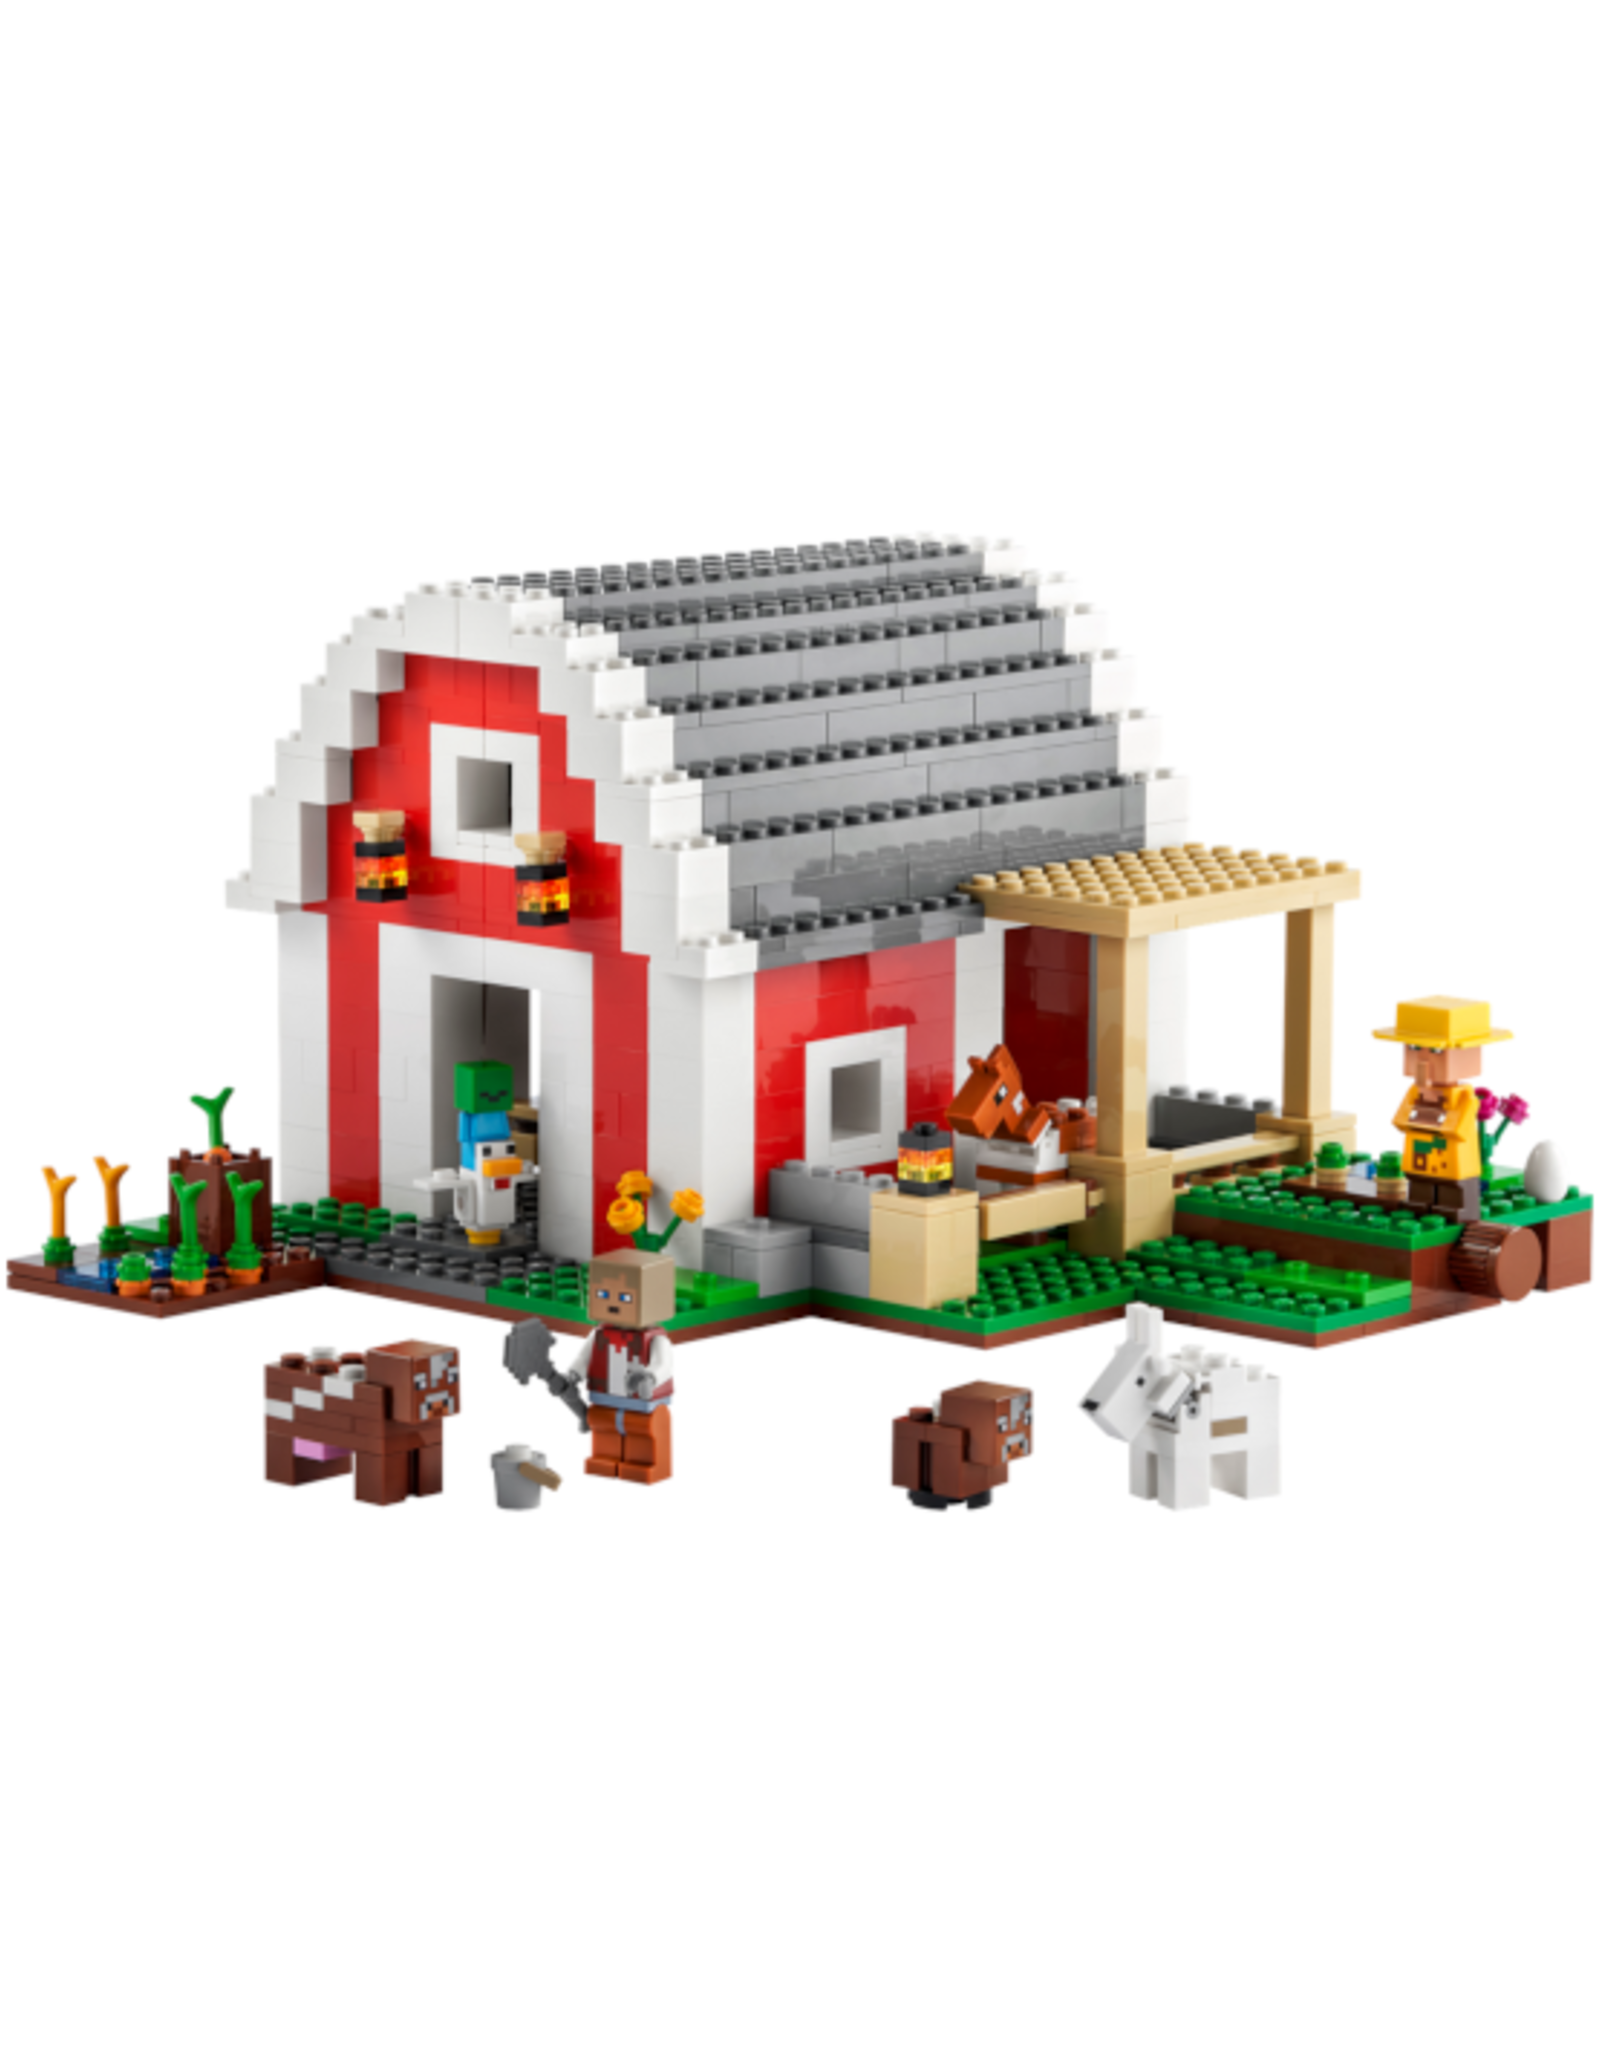 Lego Lego - Minecraft - 21187 - The Red Barn